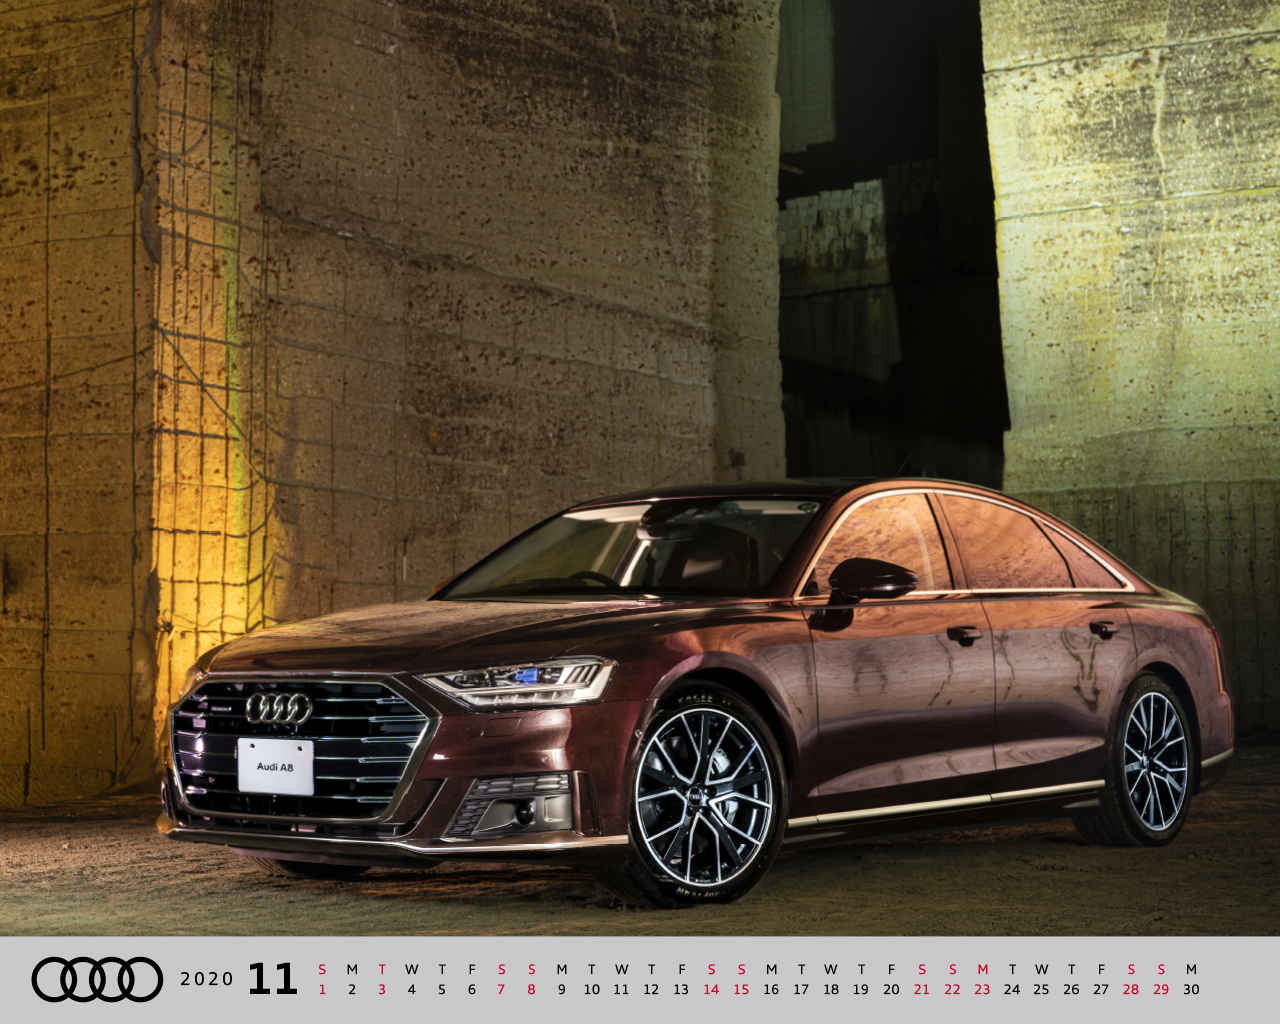 オリジナル壁紙 カレンダー Audi Japan Sales